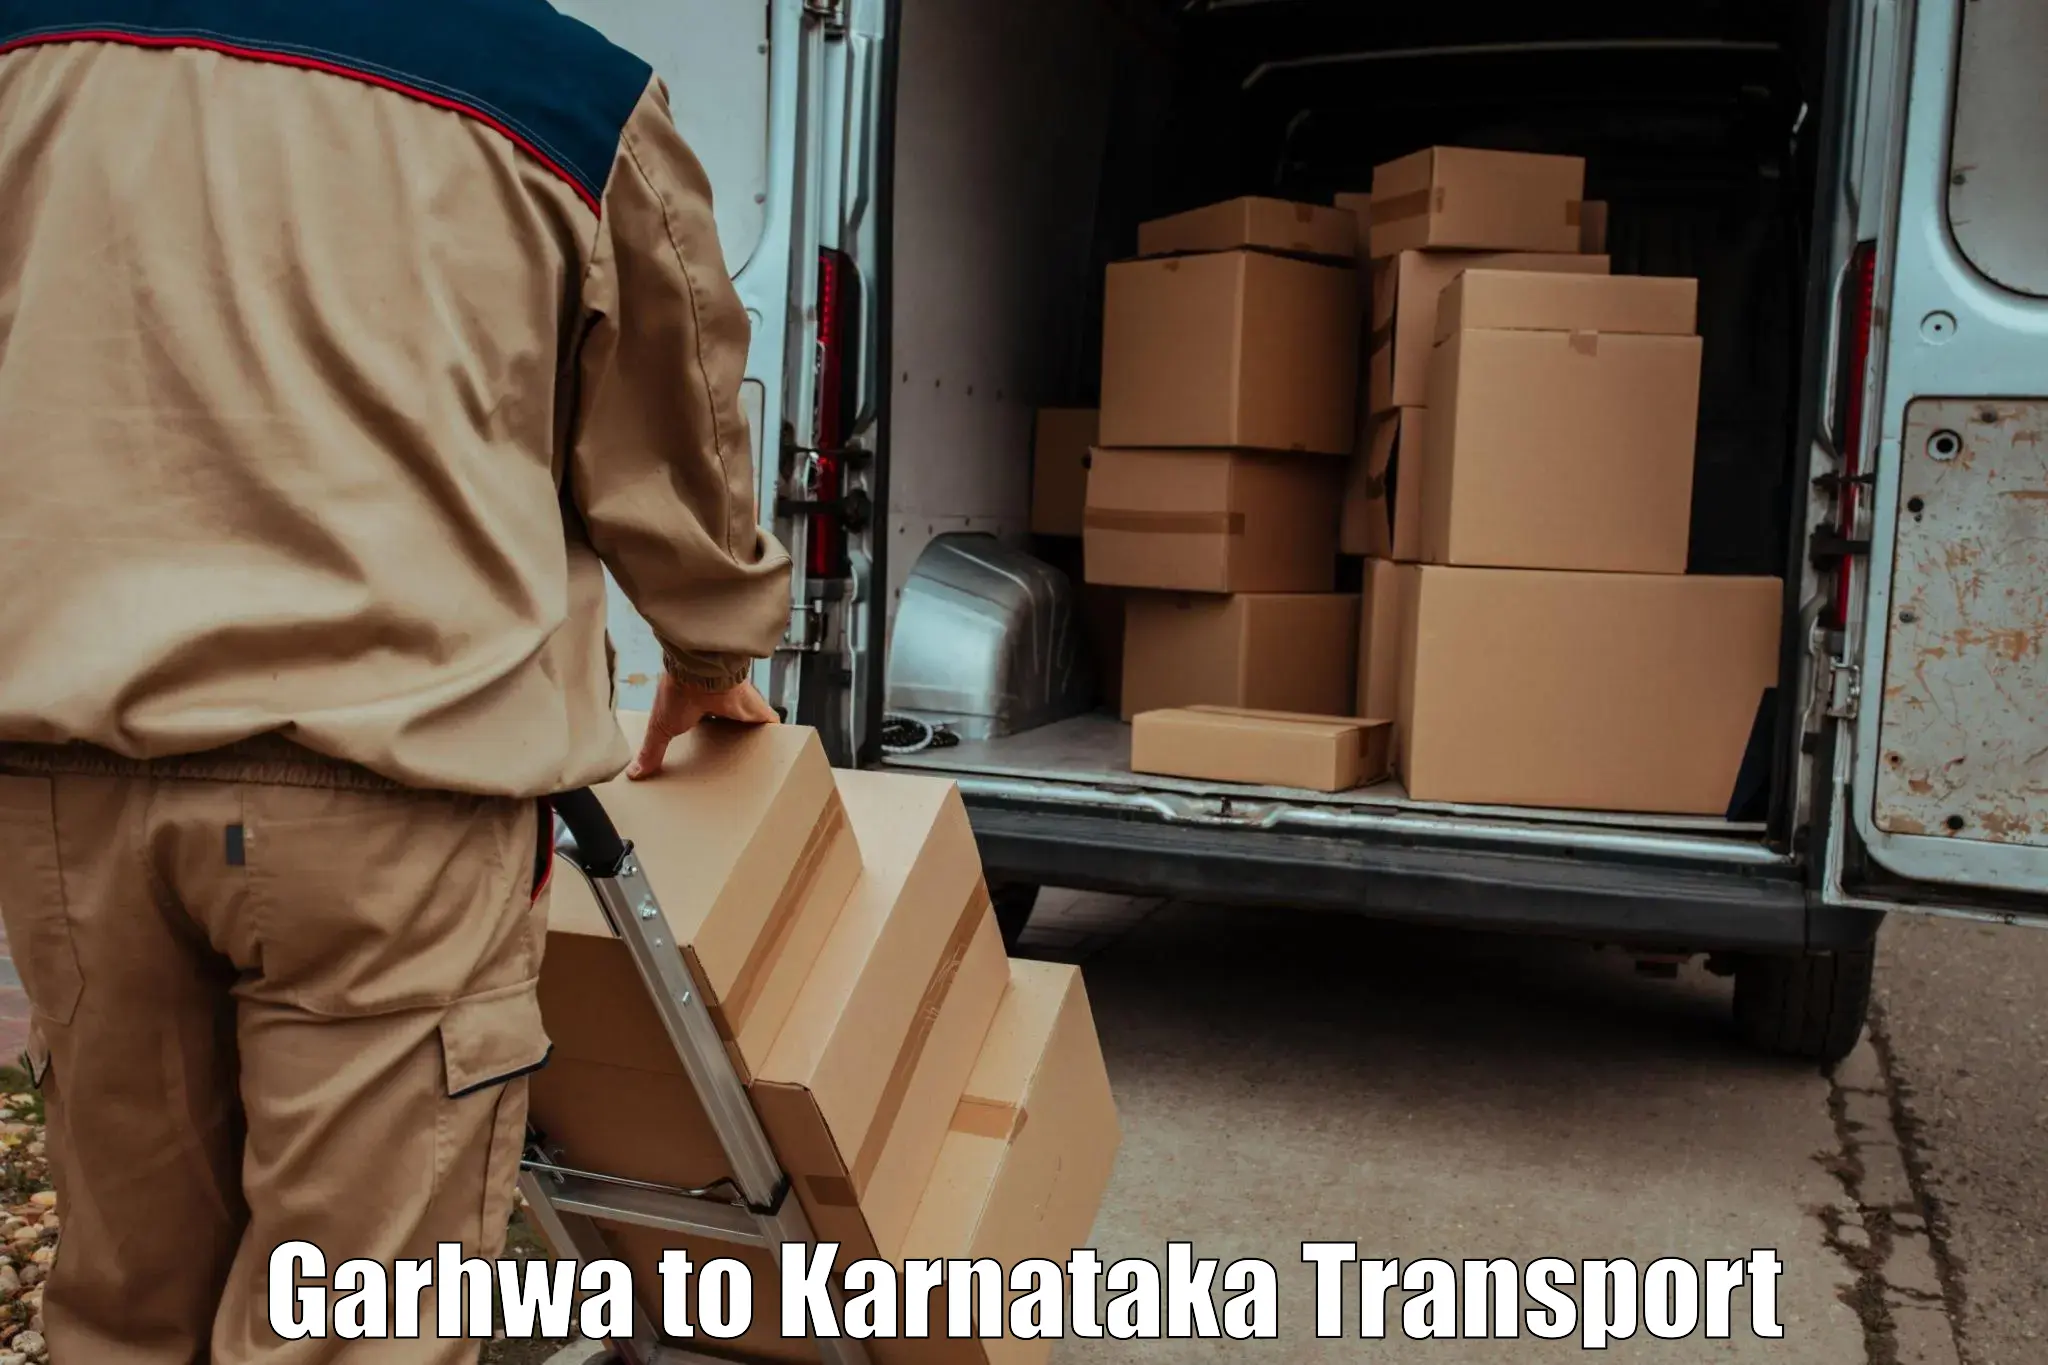 Parcel transport services Garhwa to Rajajinagar